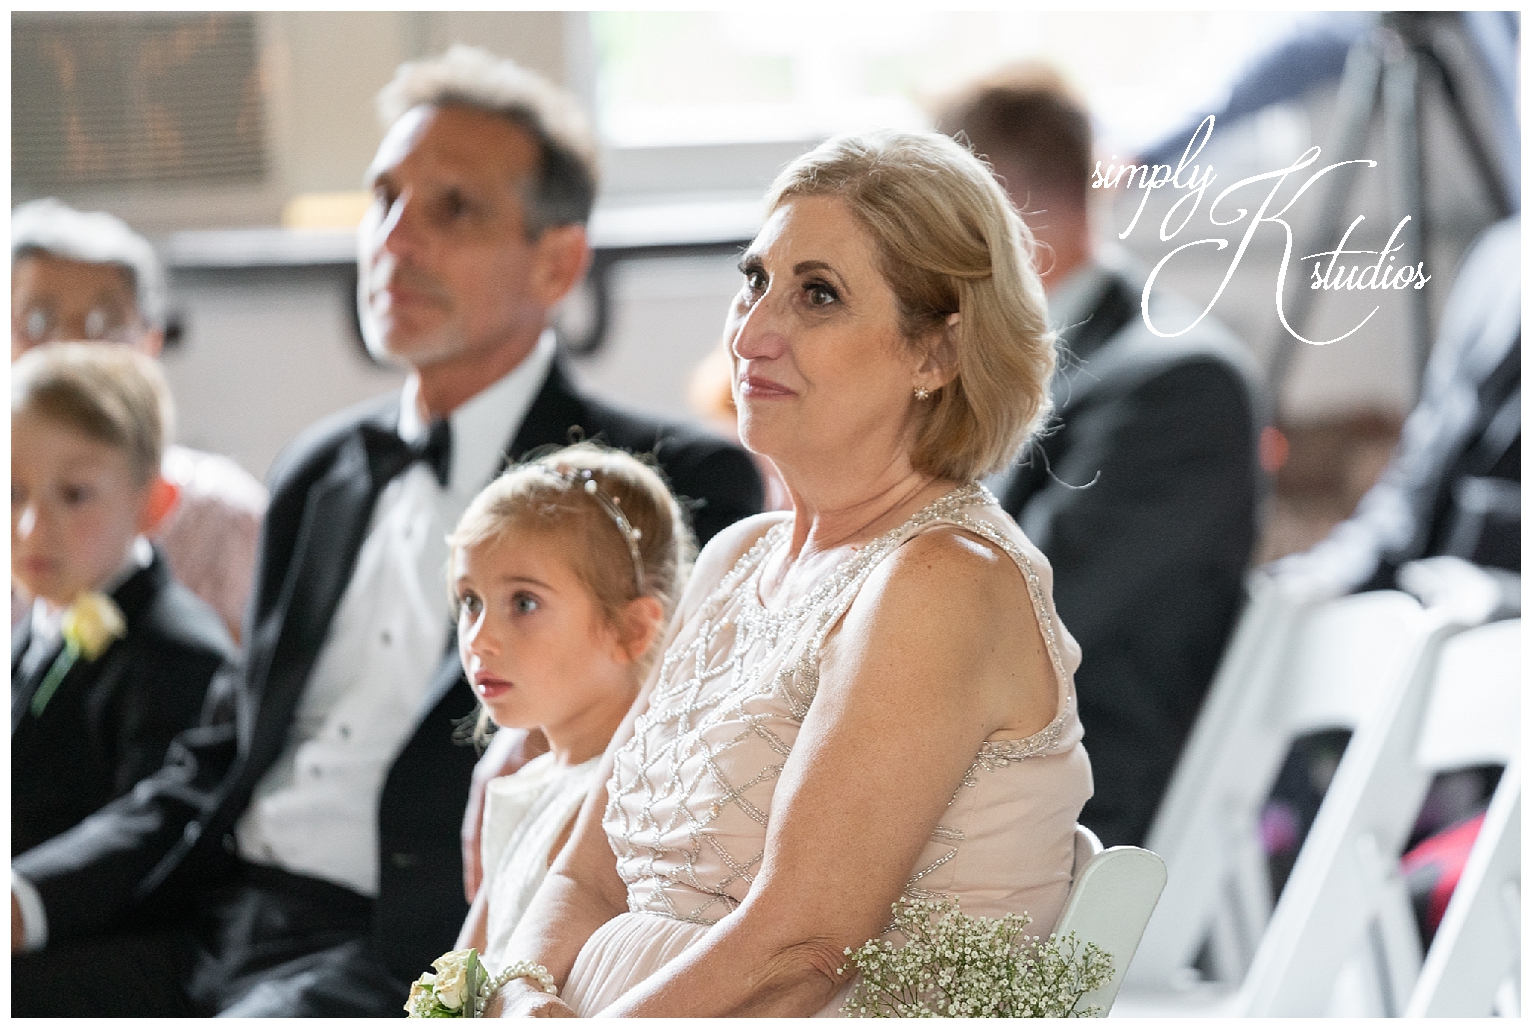 Family Photos at a Wedding.jpg